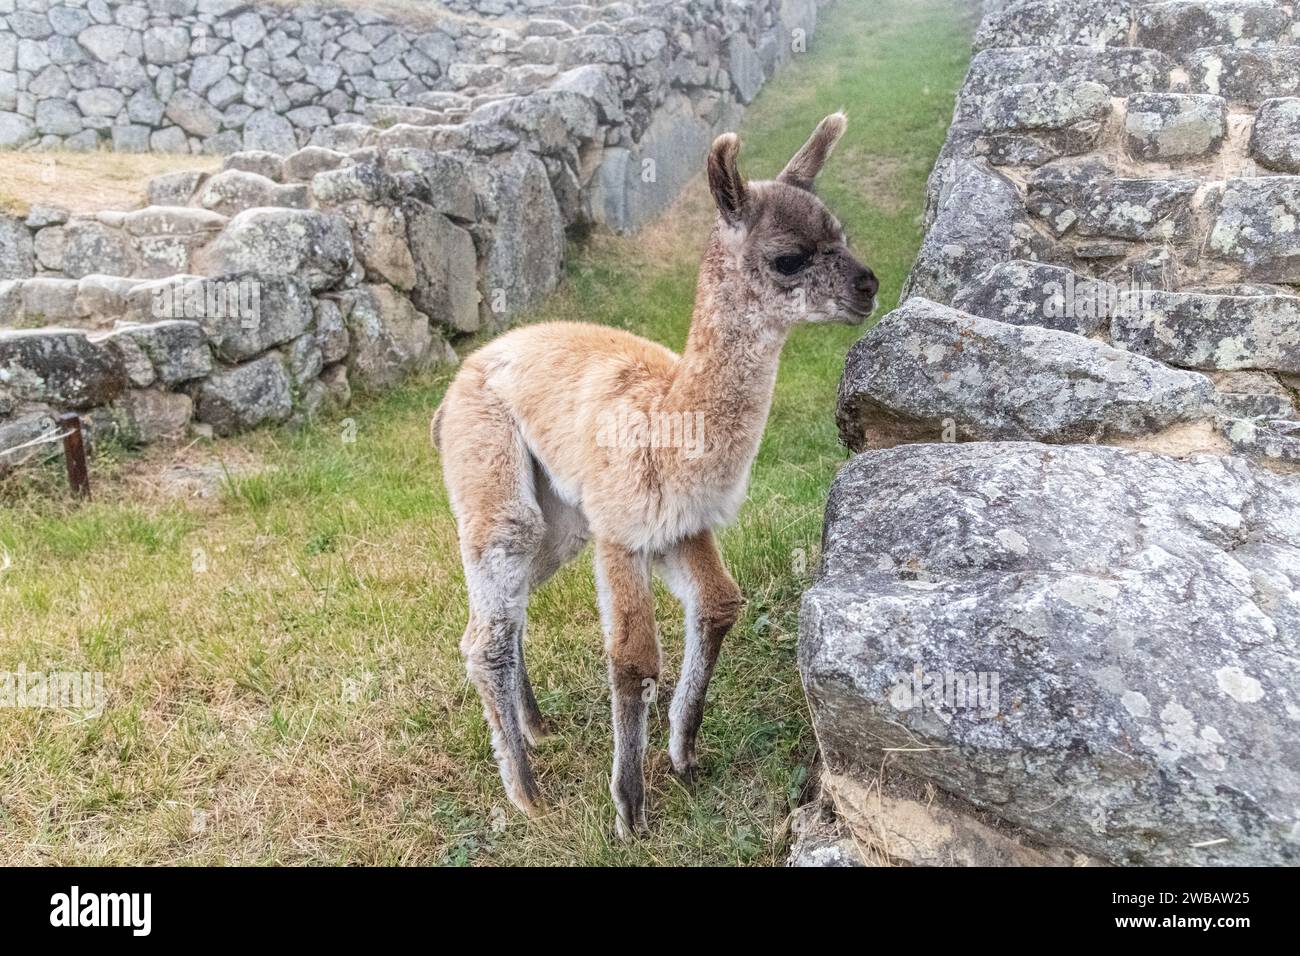 A young llama juvenile (cria) on a terrace at Machu Picchu in Peru Stock Photo